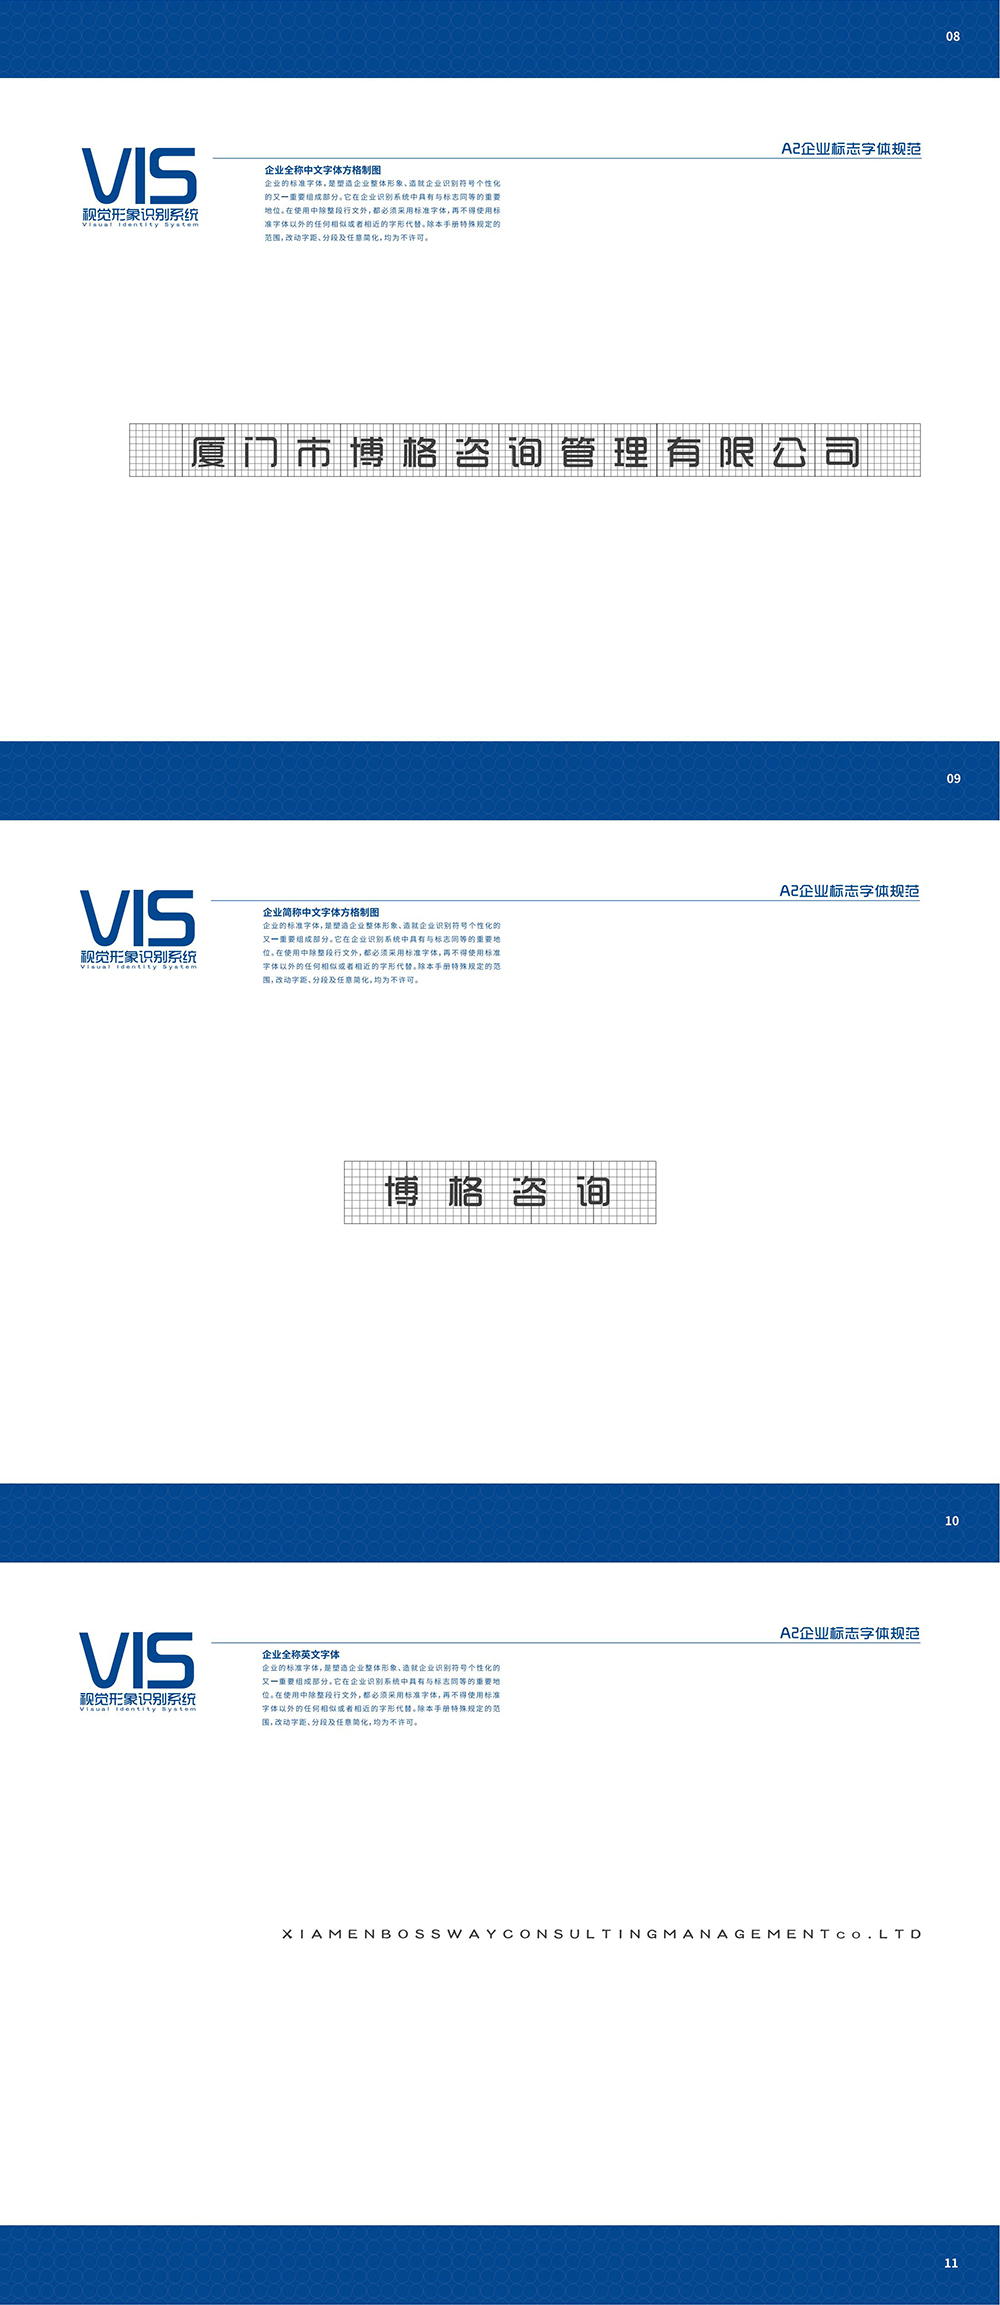 VIS视觉形象系统_00_05.jpg